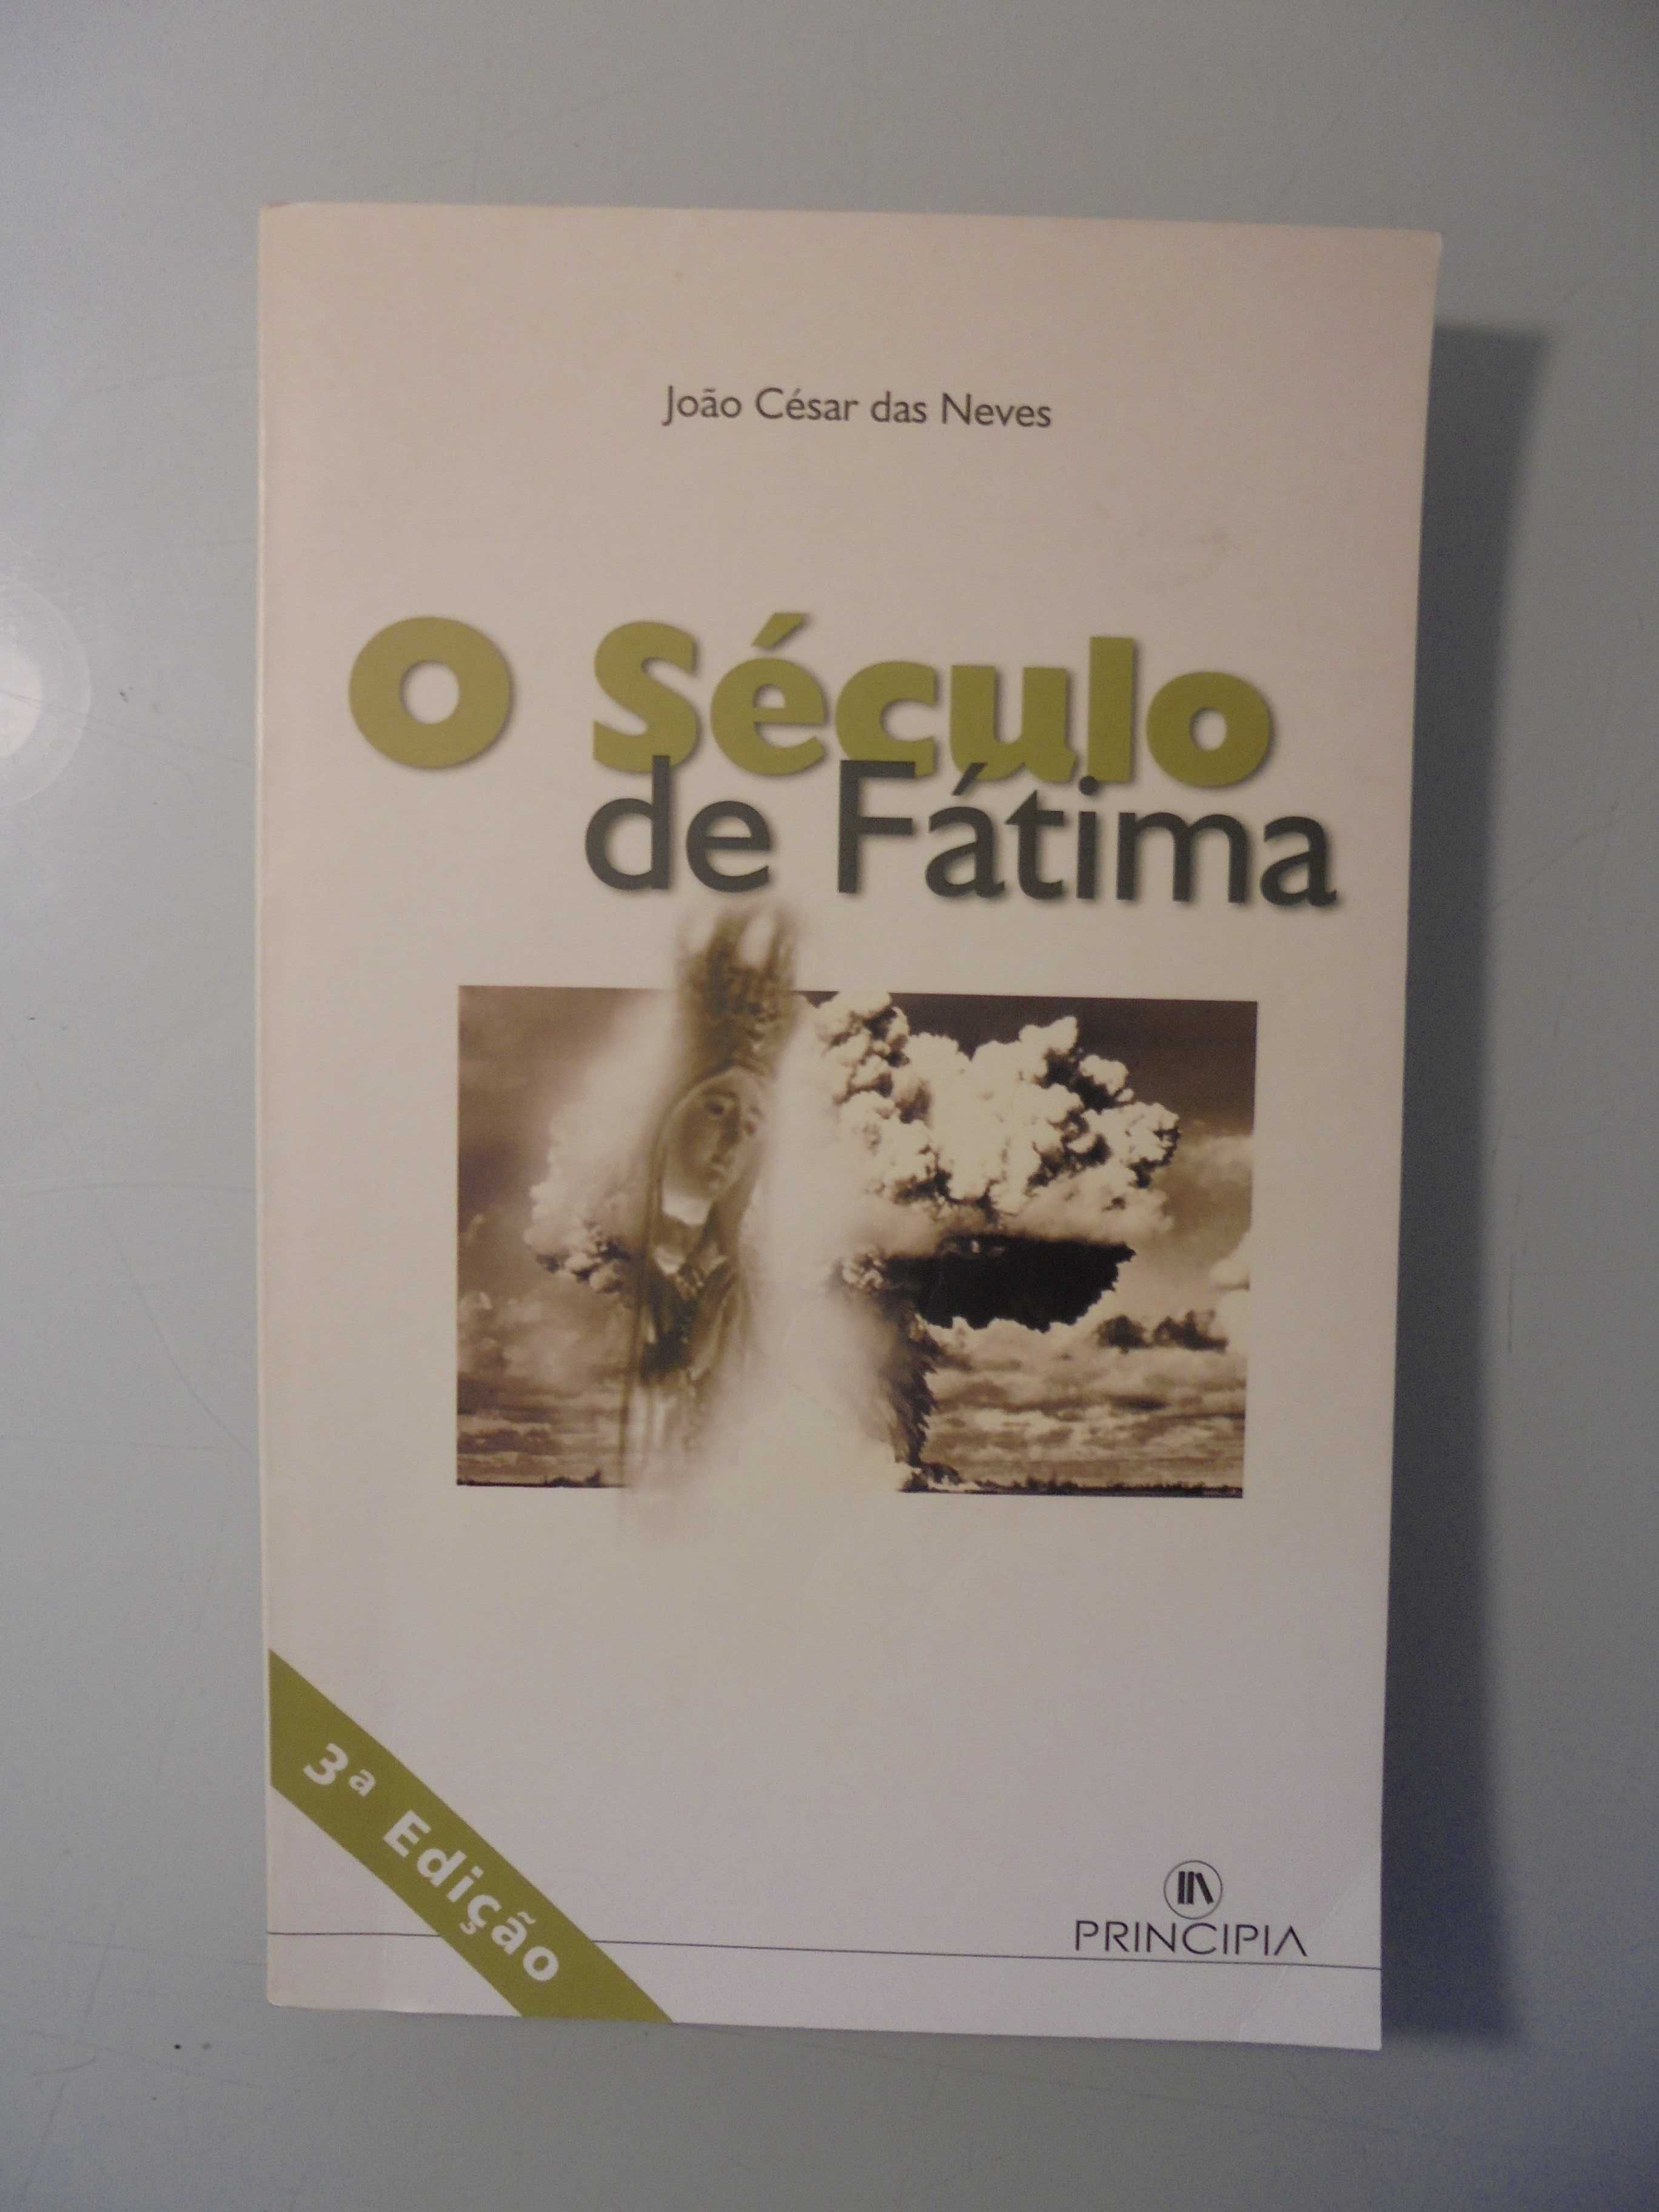 Neves (João César das);O Século de Fátima